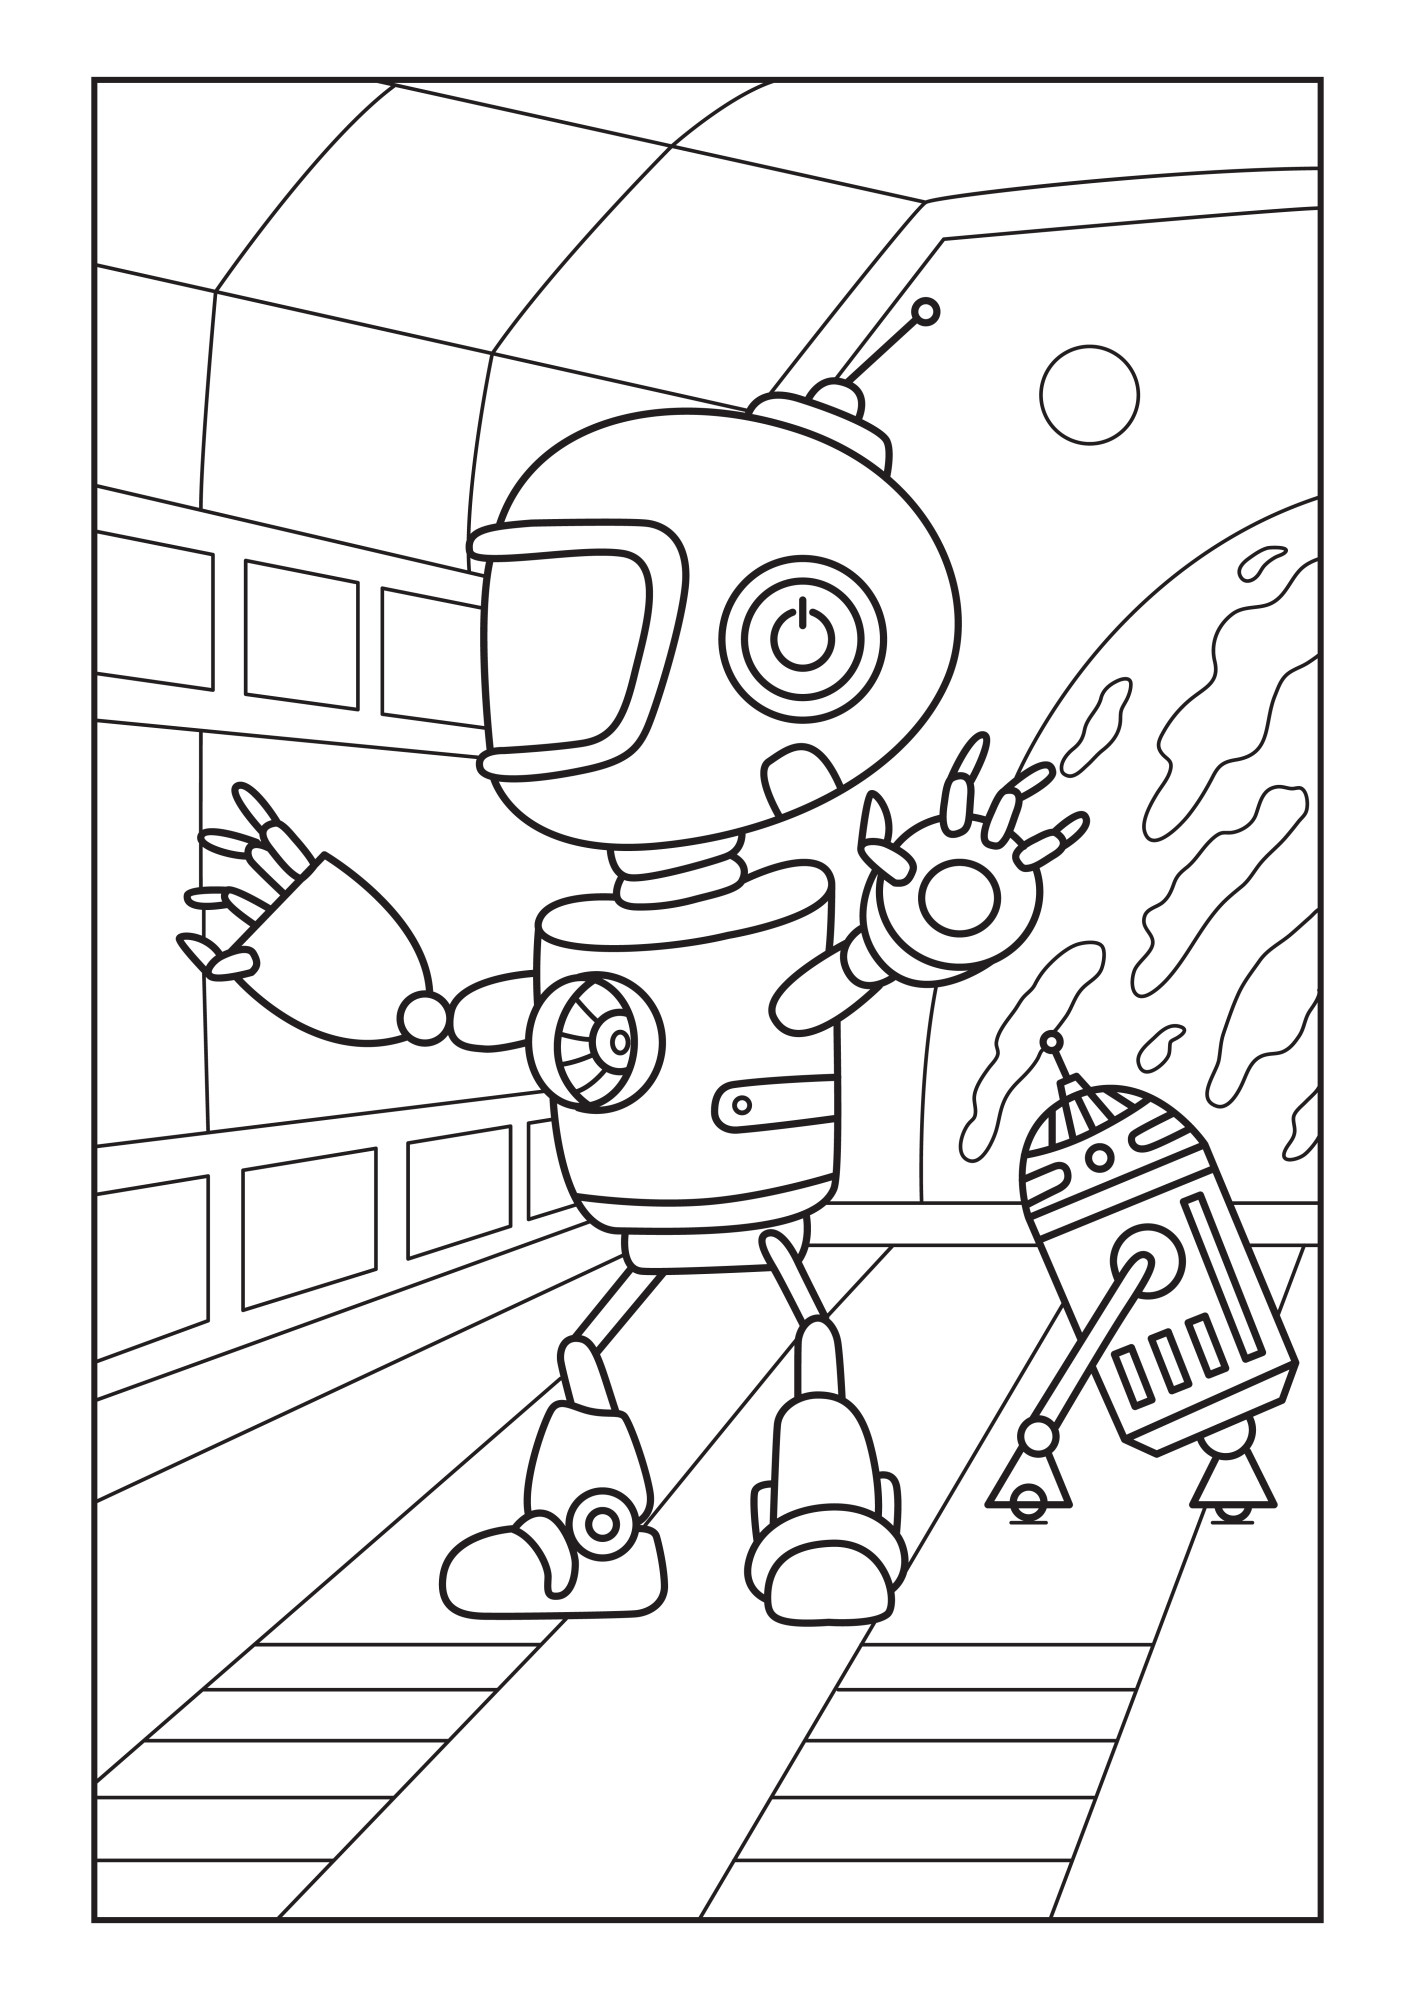 Раскраска для детей: робот в скафандре на космической станции